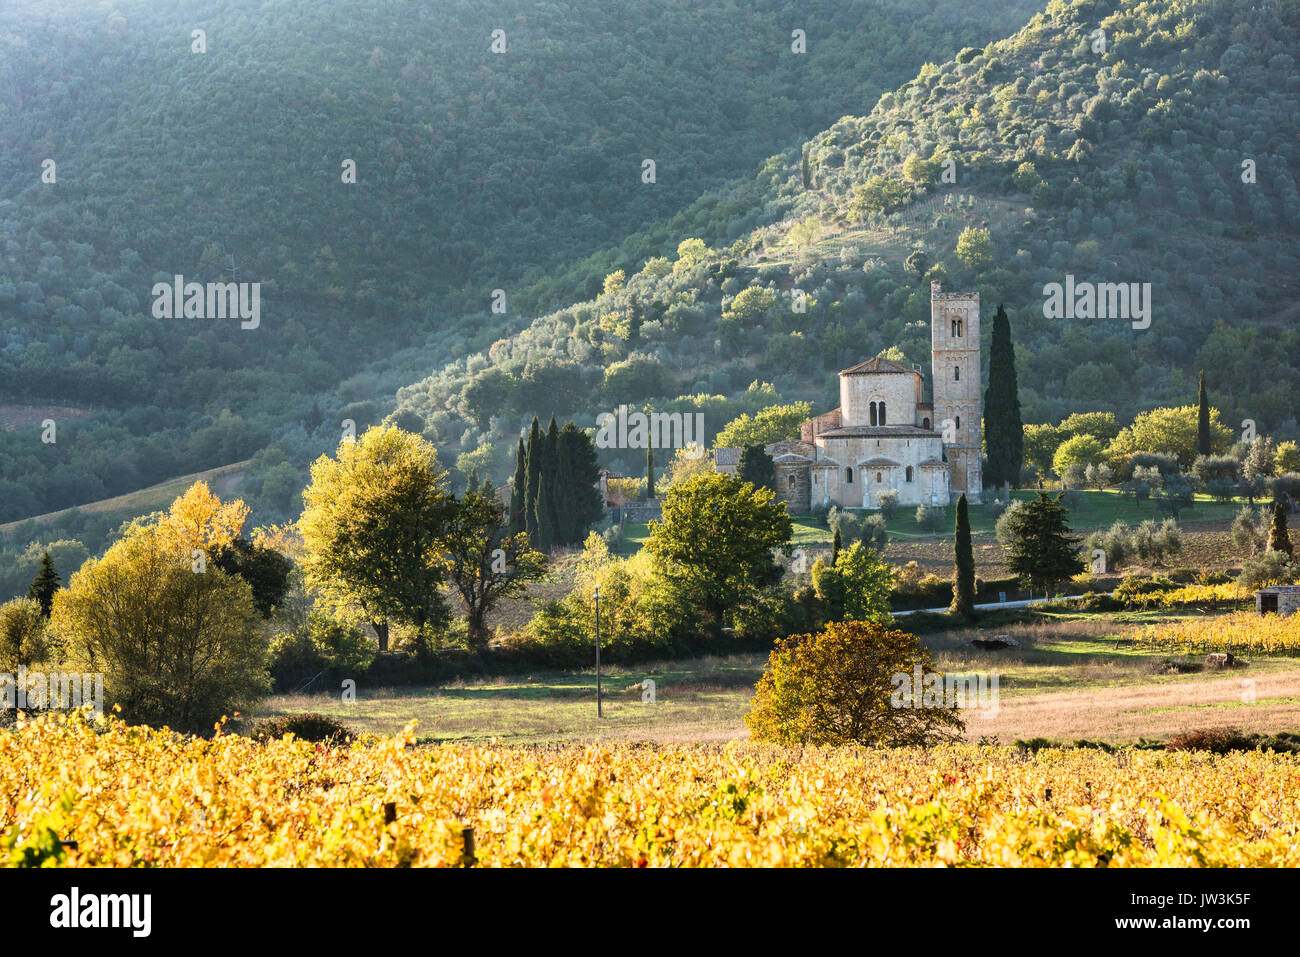 Italia, Toscana, Montalcino, Abbazia di Sant'Antimo nei pressi di Montalcino, sulle verdi colline Foto Stock